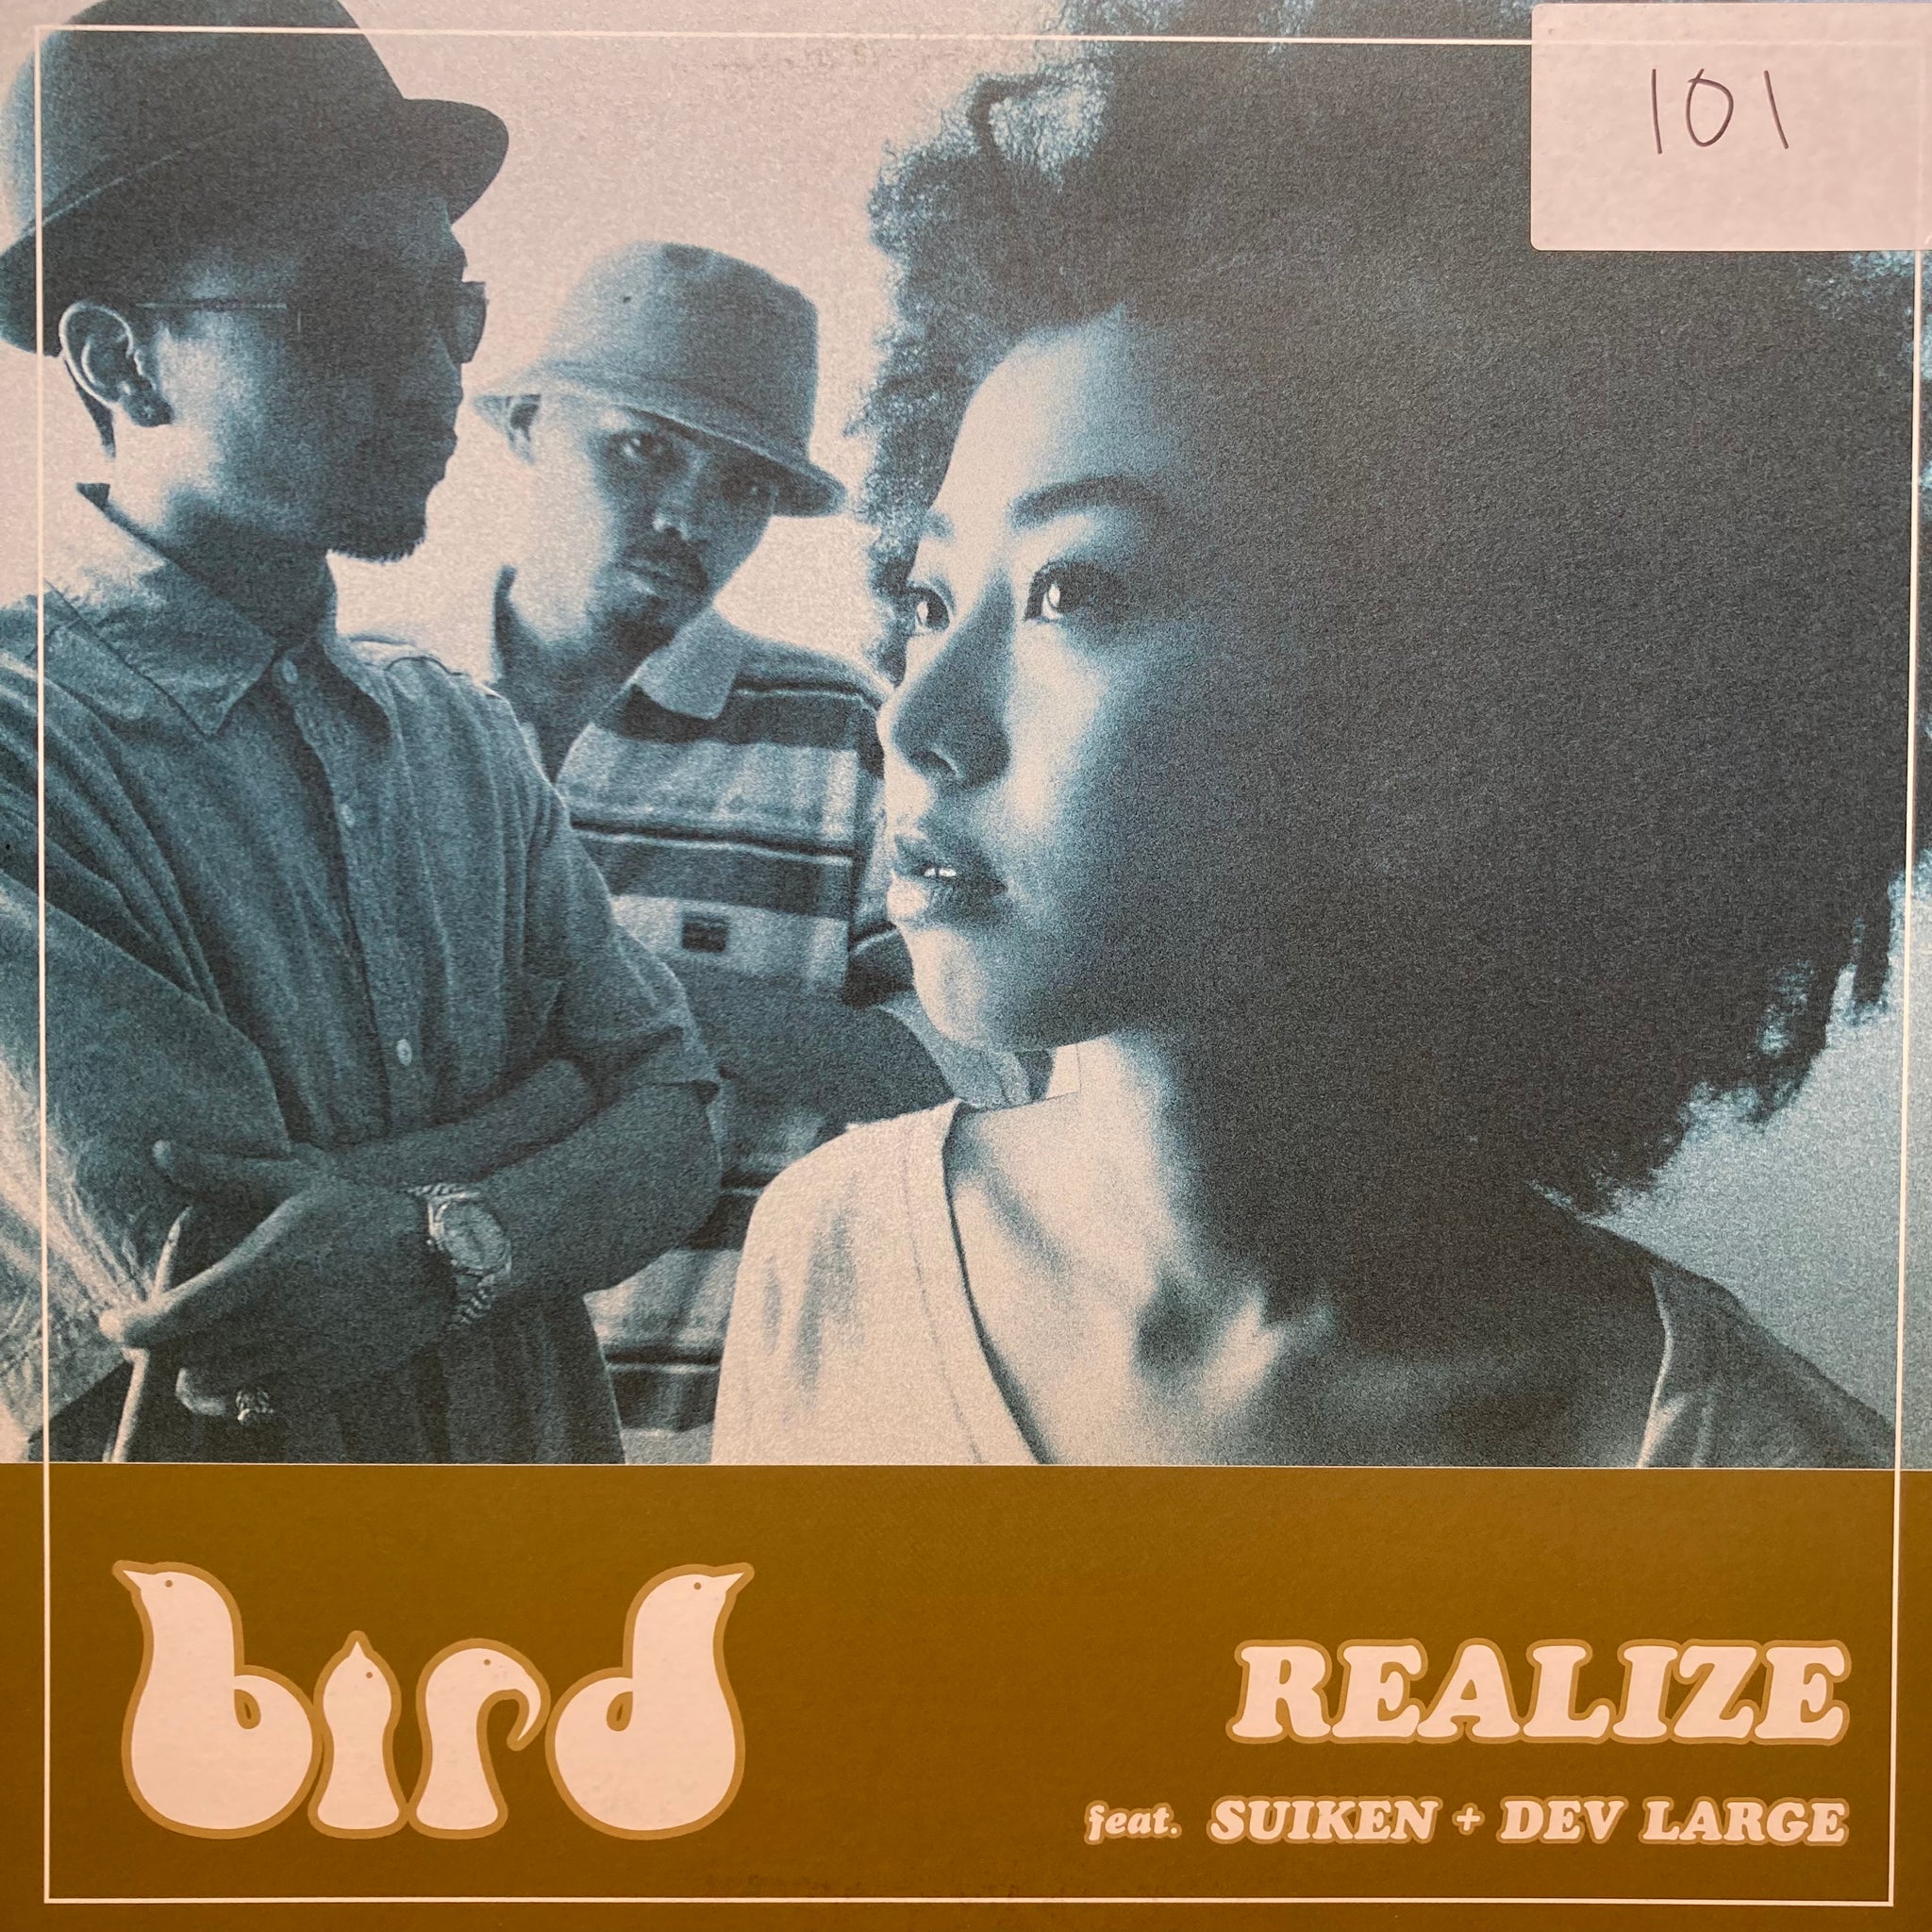 Bird - Realize